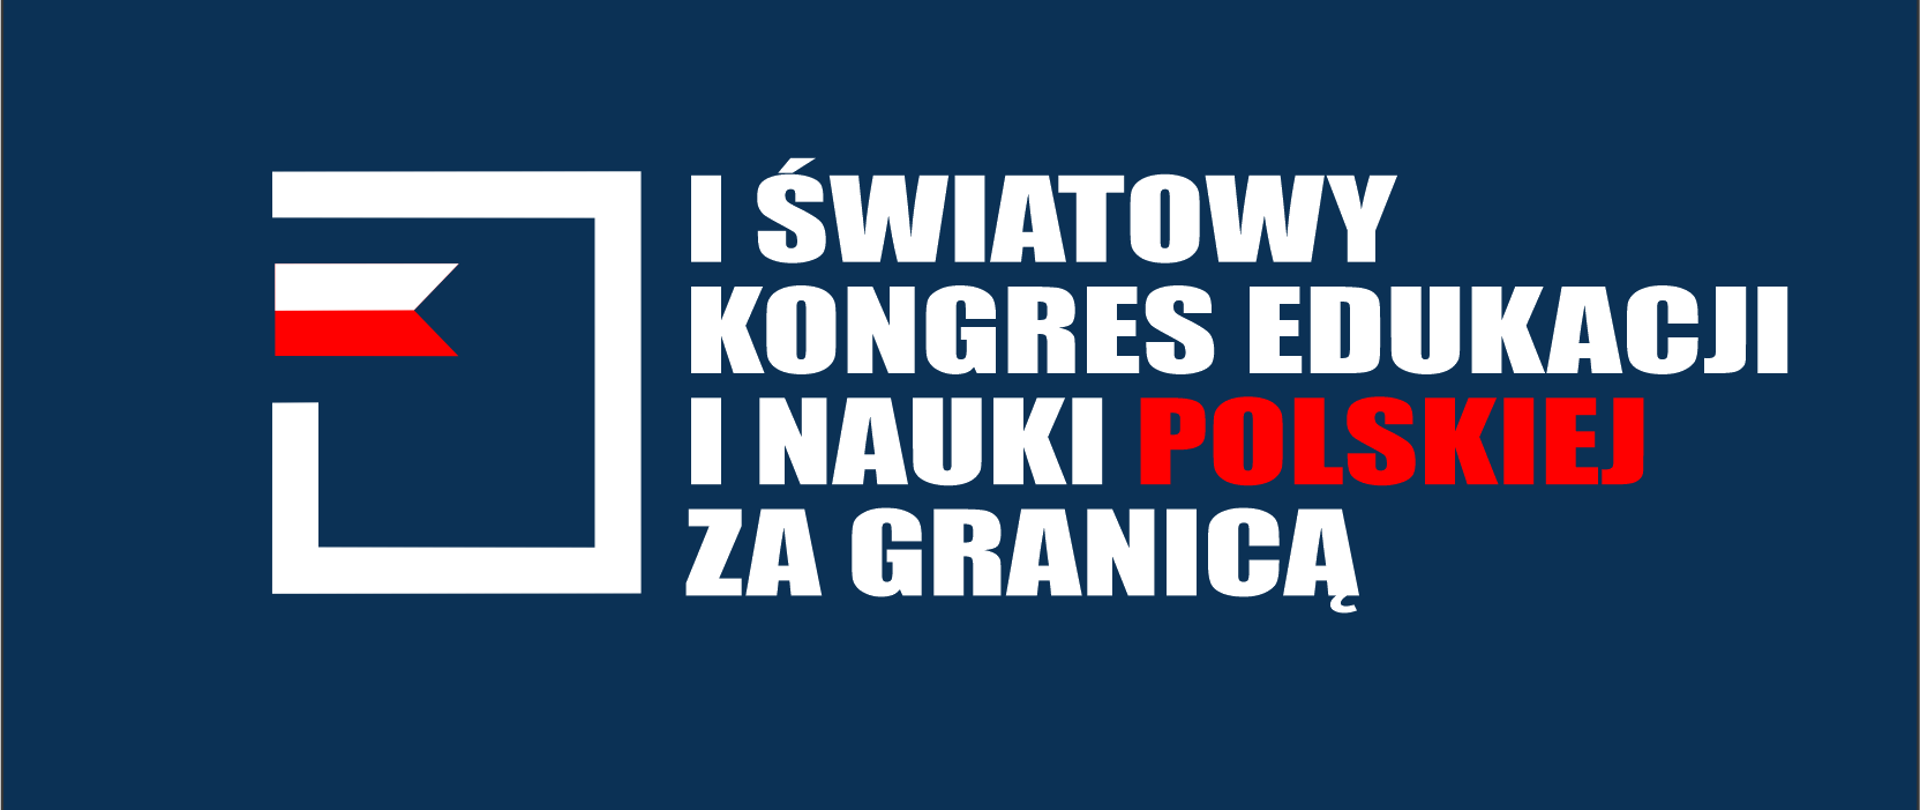 W dniach 5-9 lipca 2023 r. w Warszawie odbędzie się I Światowy Kongres Edukacji i Nauki Polskiej za Granicą pod patronatem Pierwszej Damy RP, Pani Agaty Kornhauser-Dudy. 